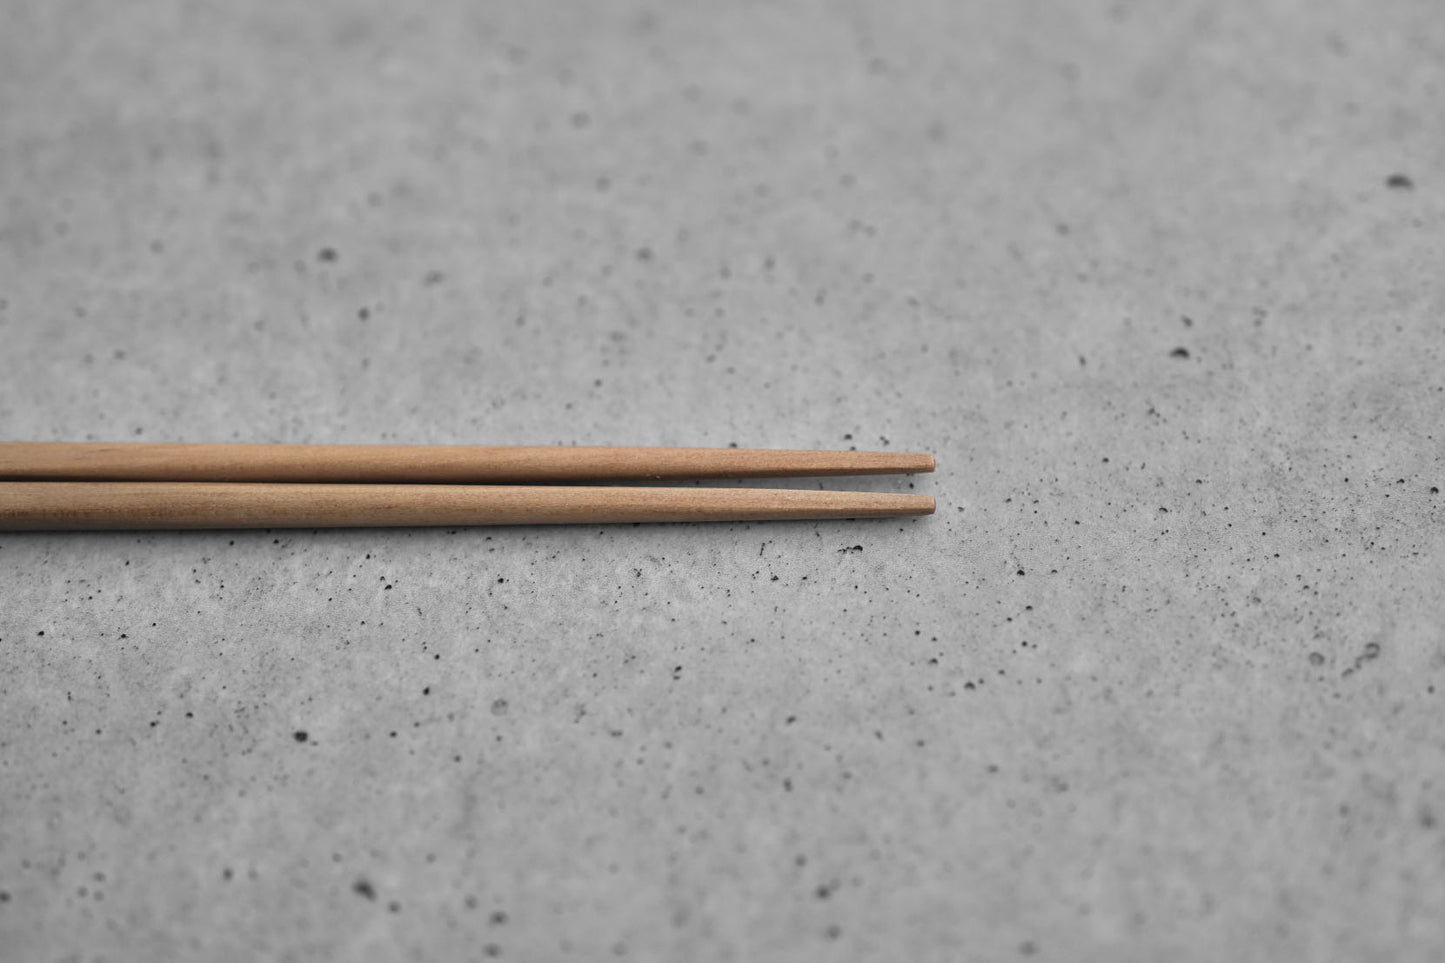 Yoshita Handi-Design Studio / Racco chopsticks